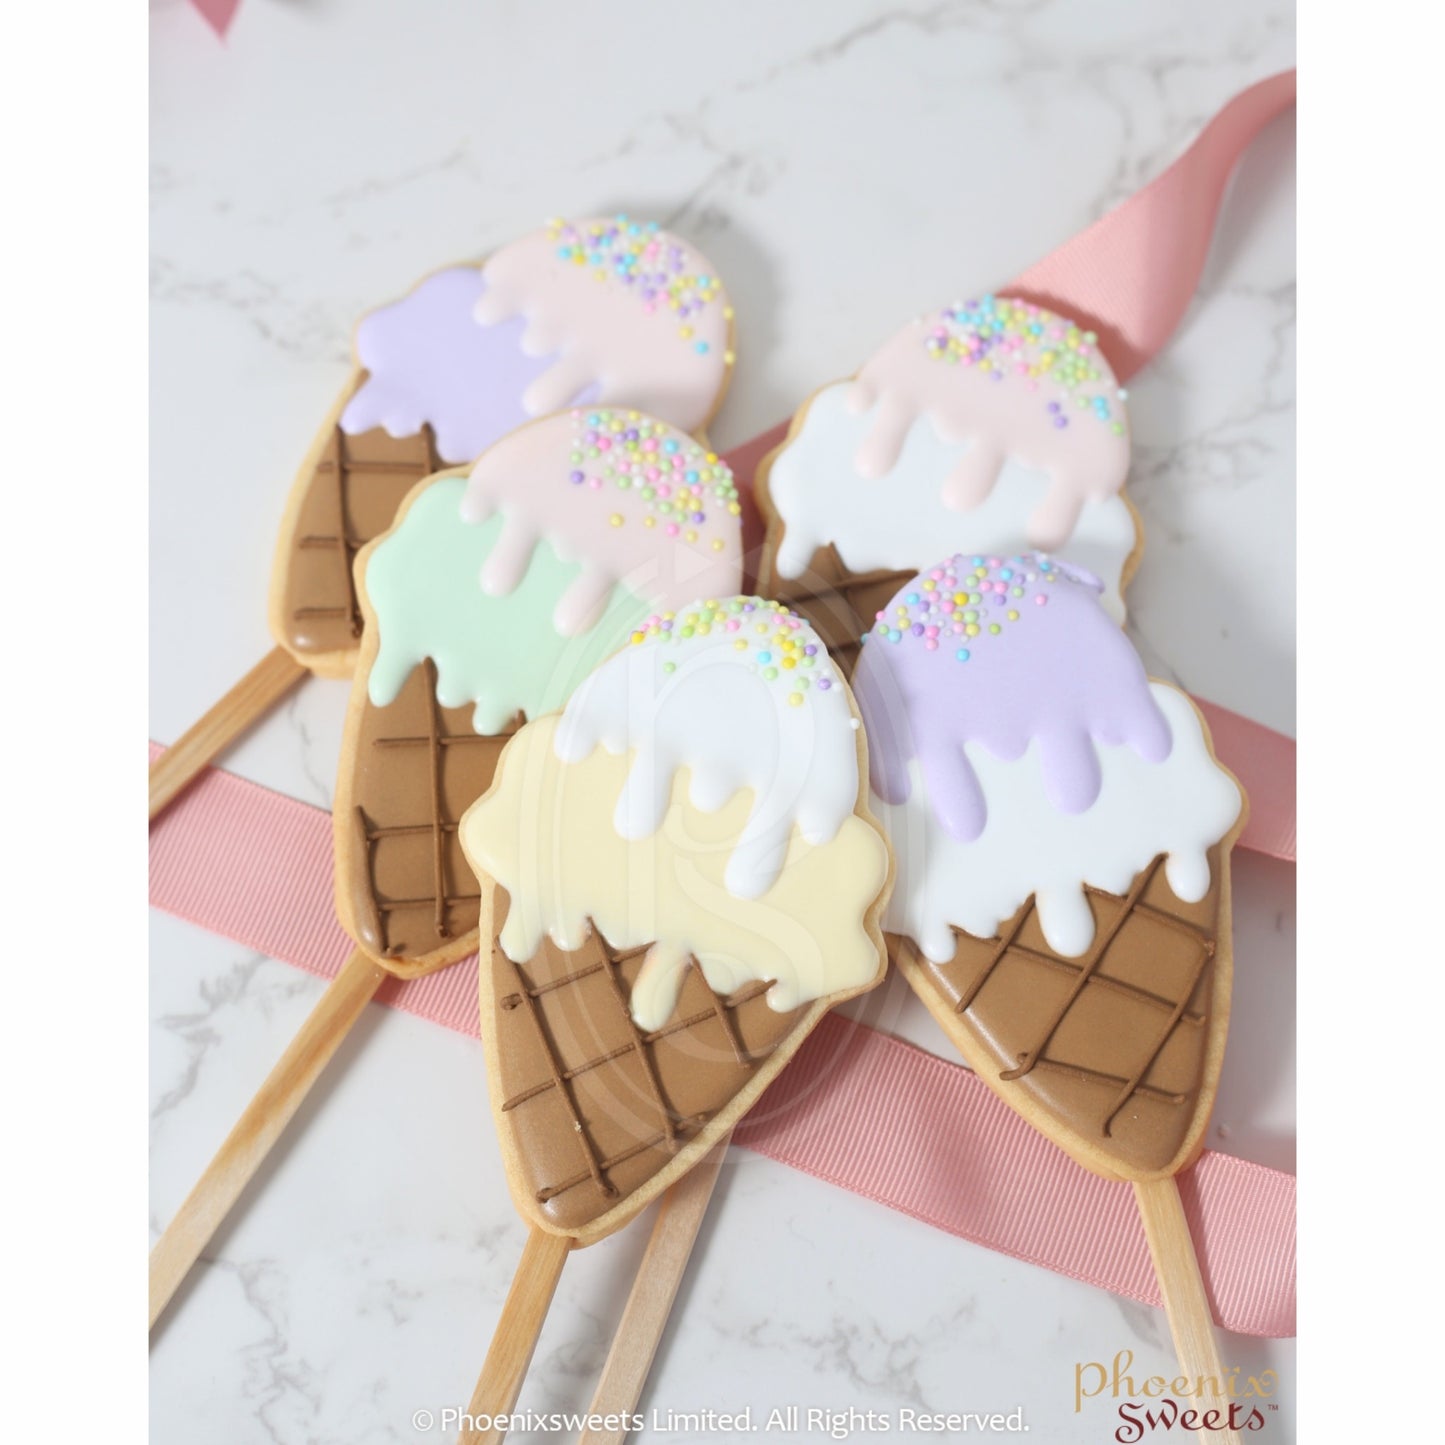 'Ice-Cream' on a Stick曲奇